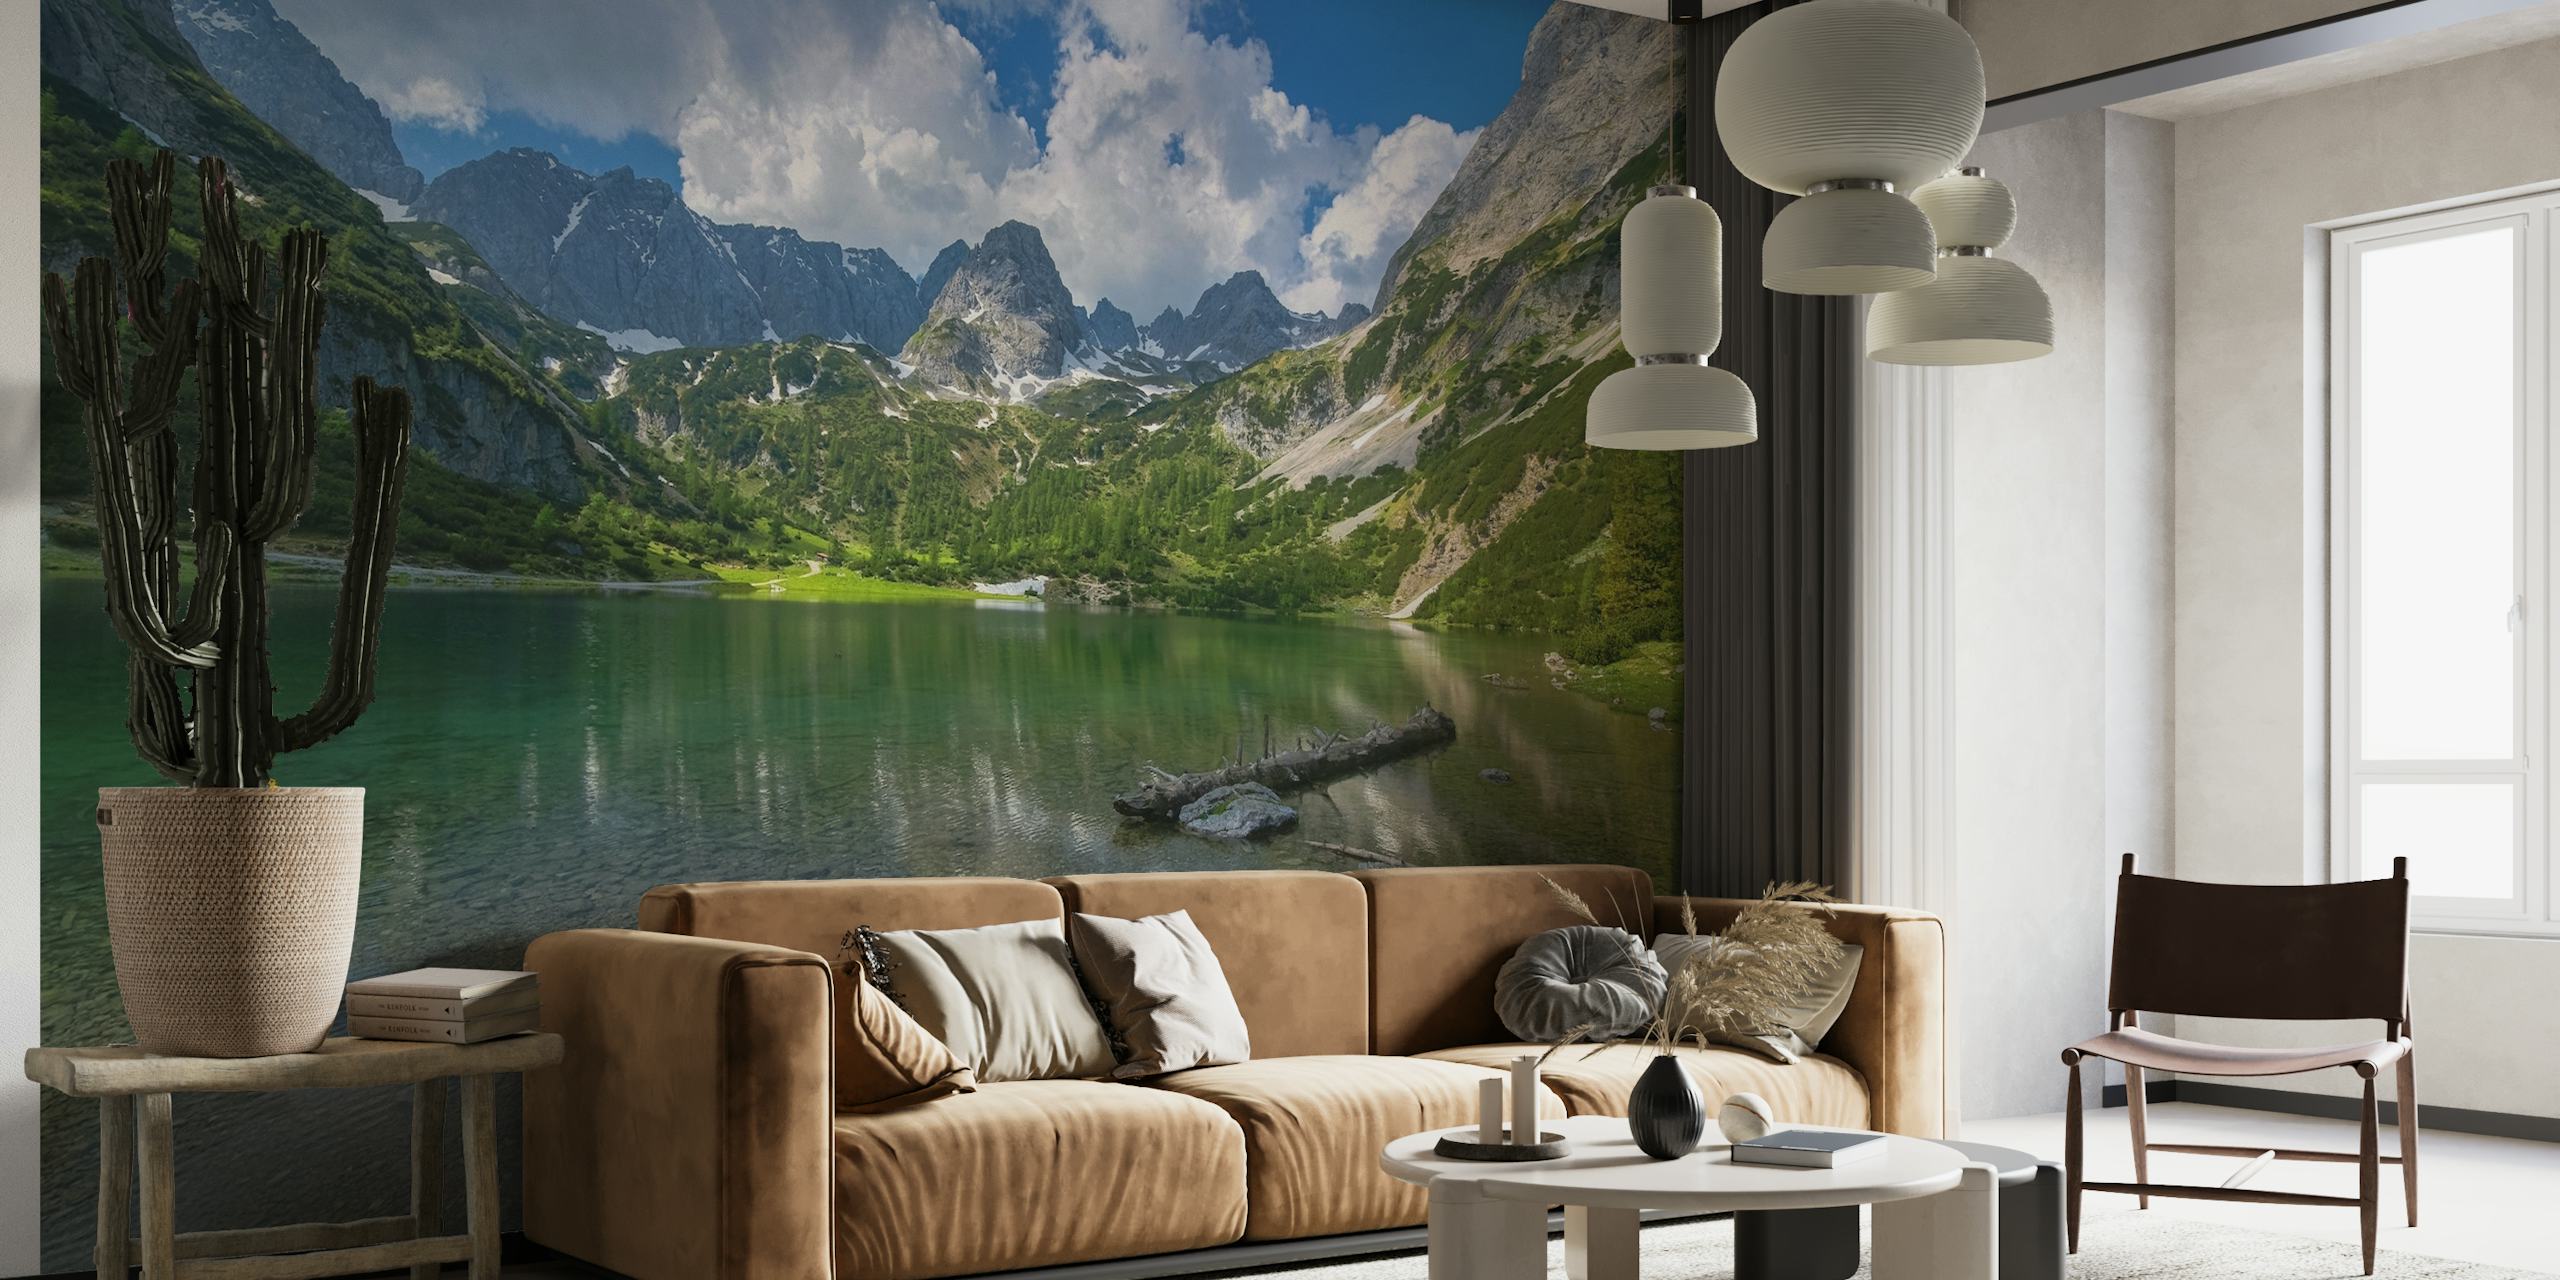 Fototapeta Seebensea w Tyrolu przedstawiająca spokojne alpejskie jezioro z górskimi refleksami